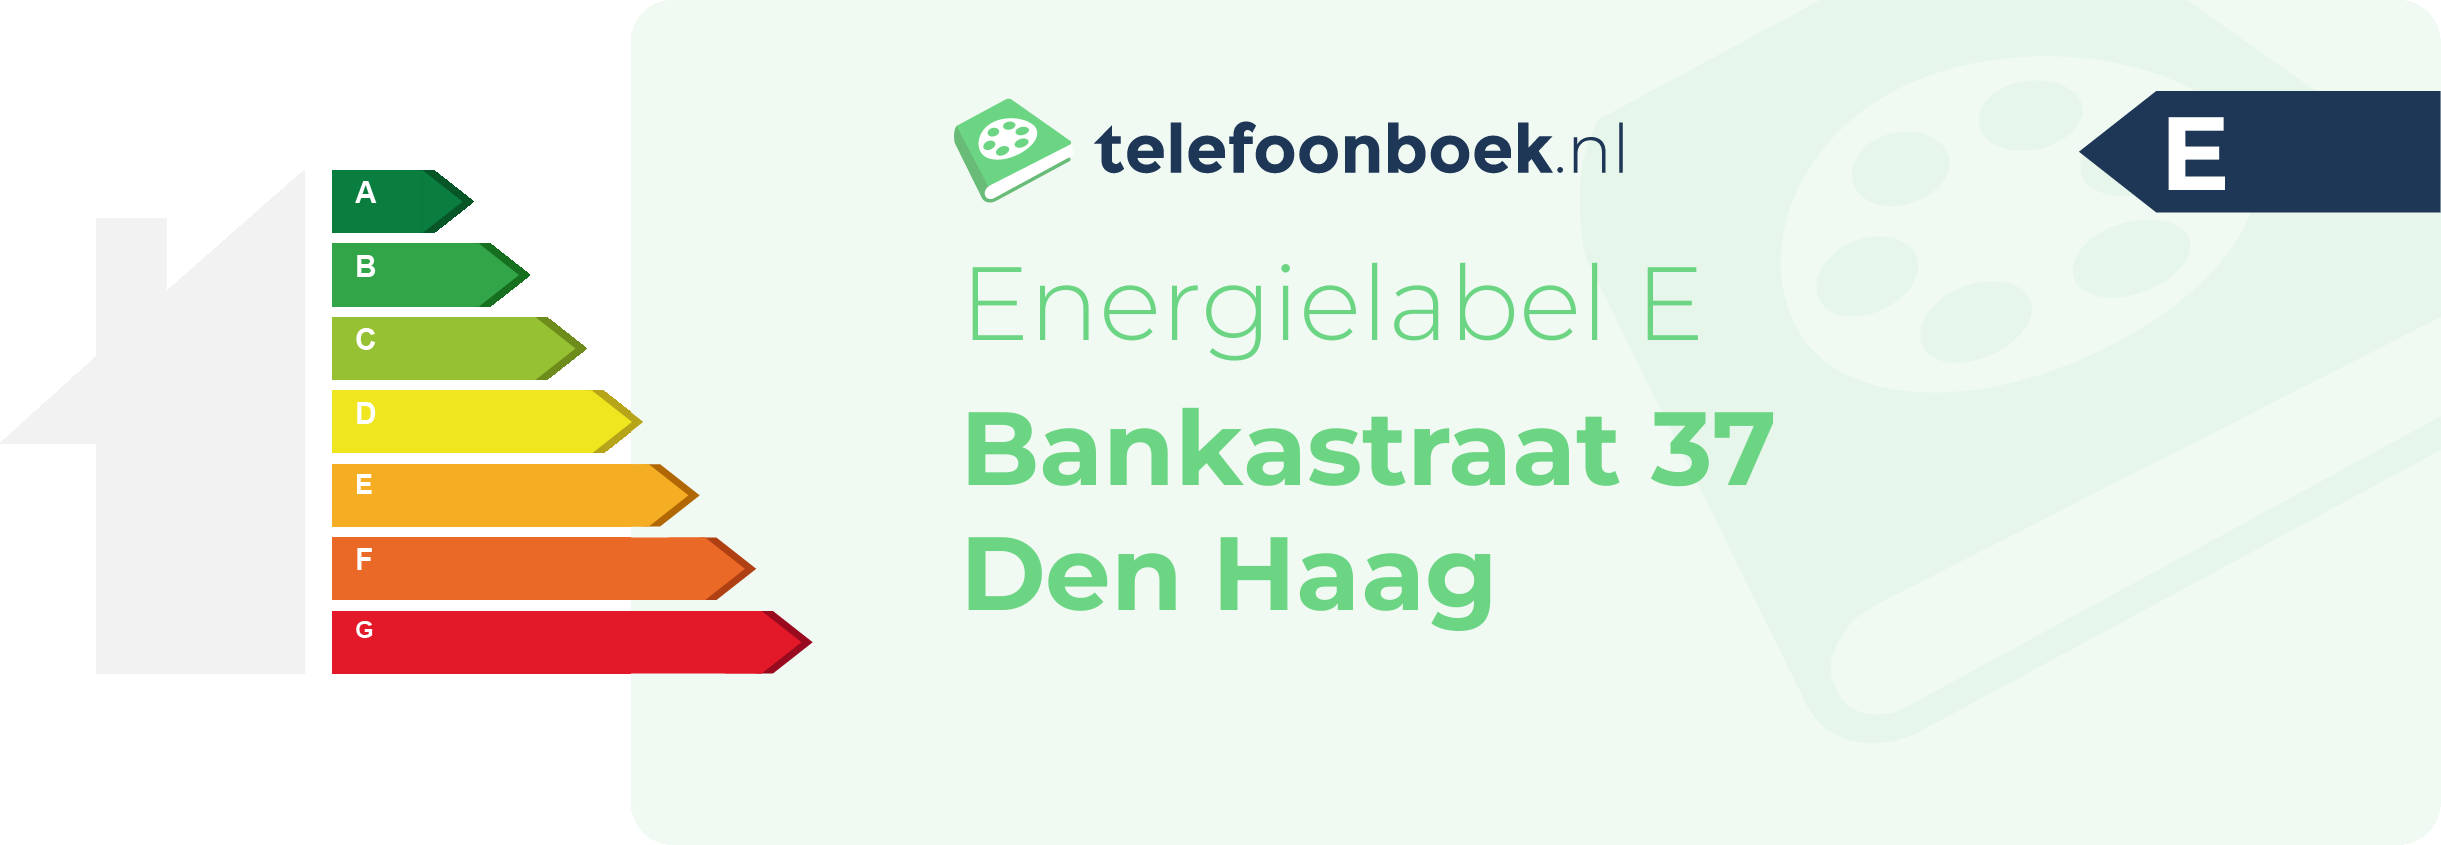 Energielabel Bankastraat 37 Den Haag